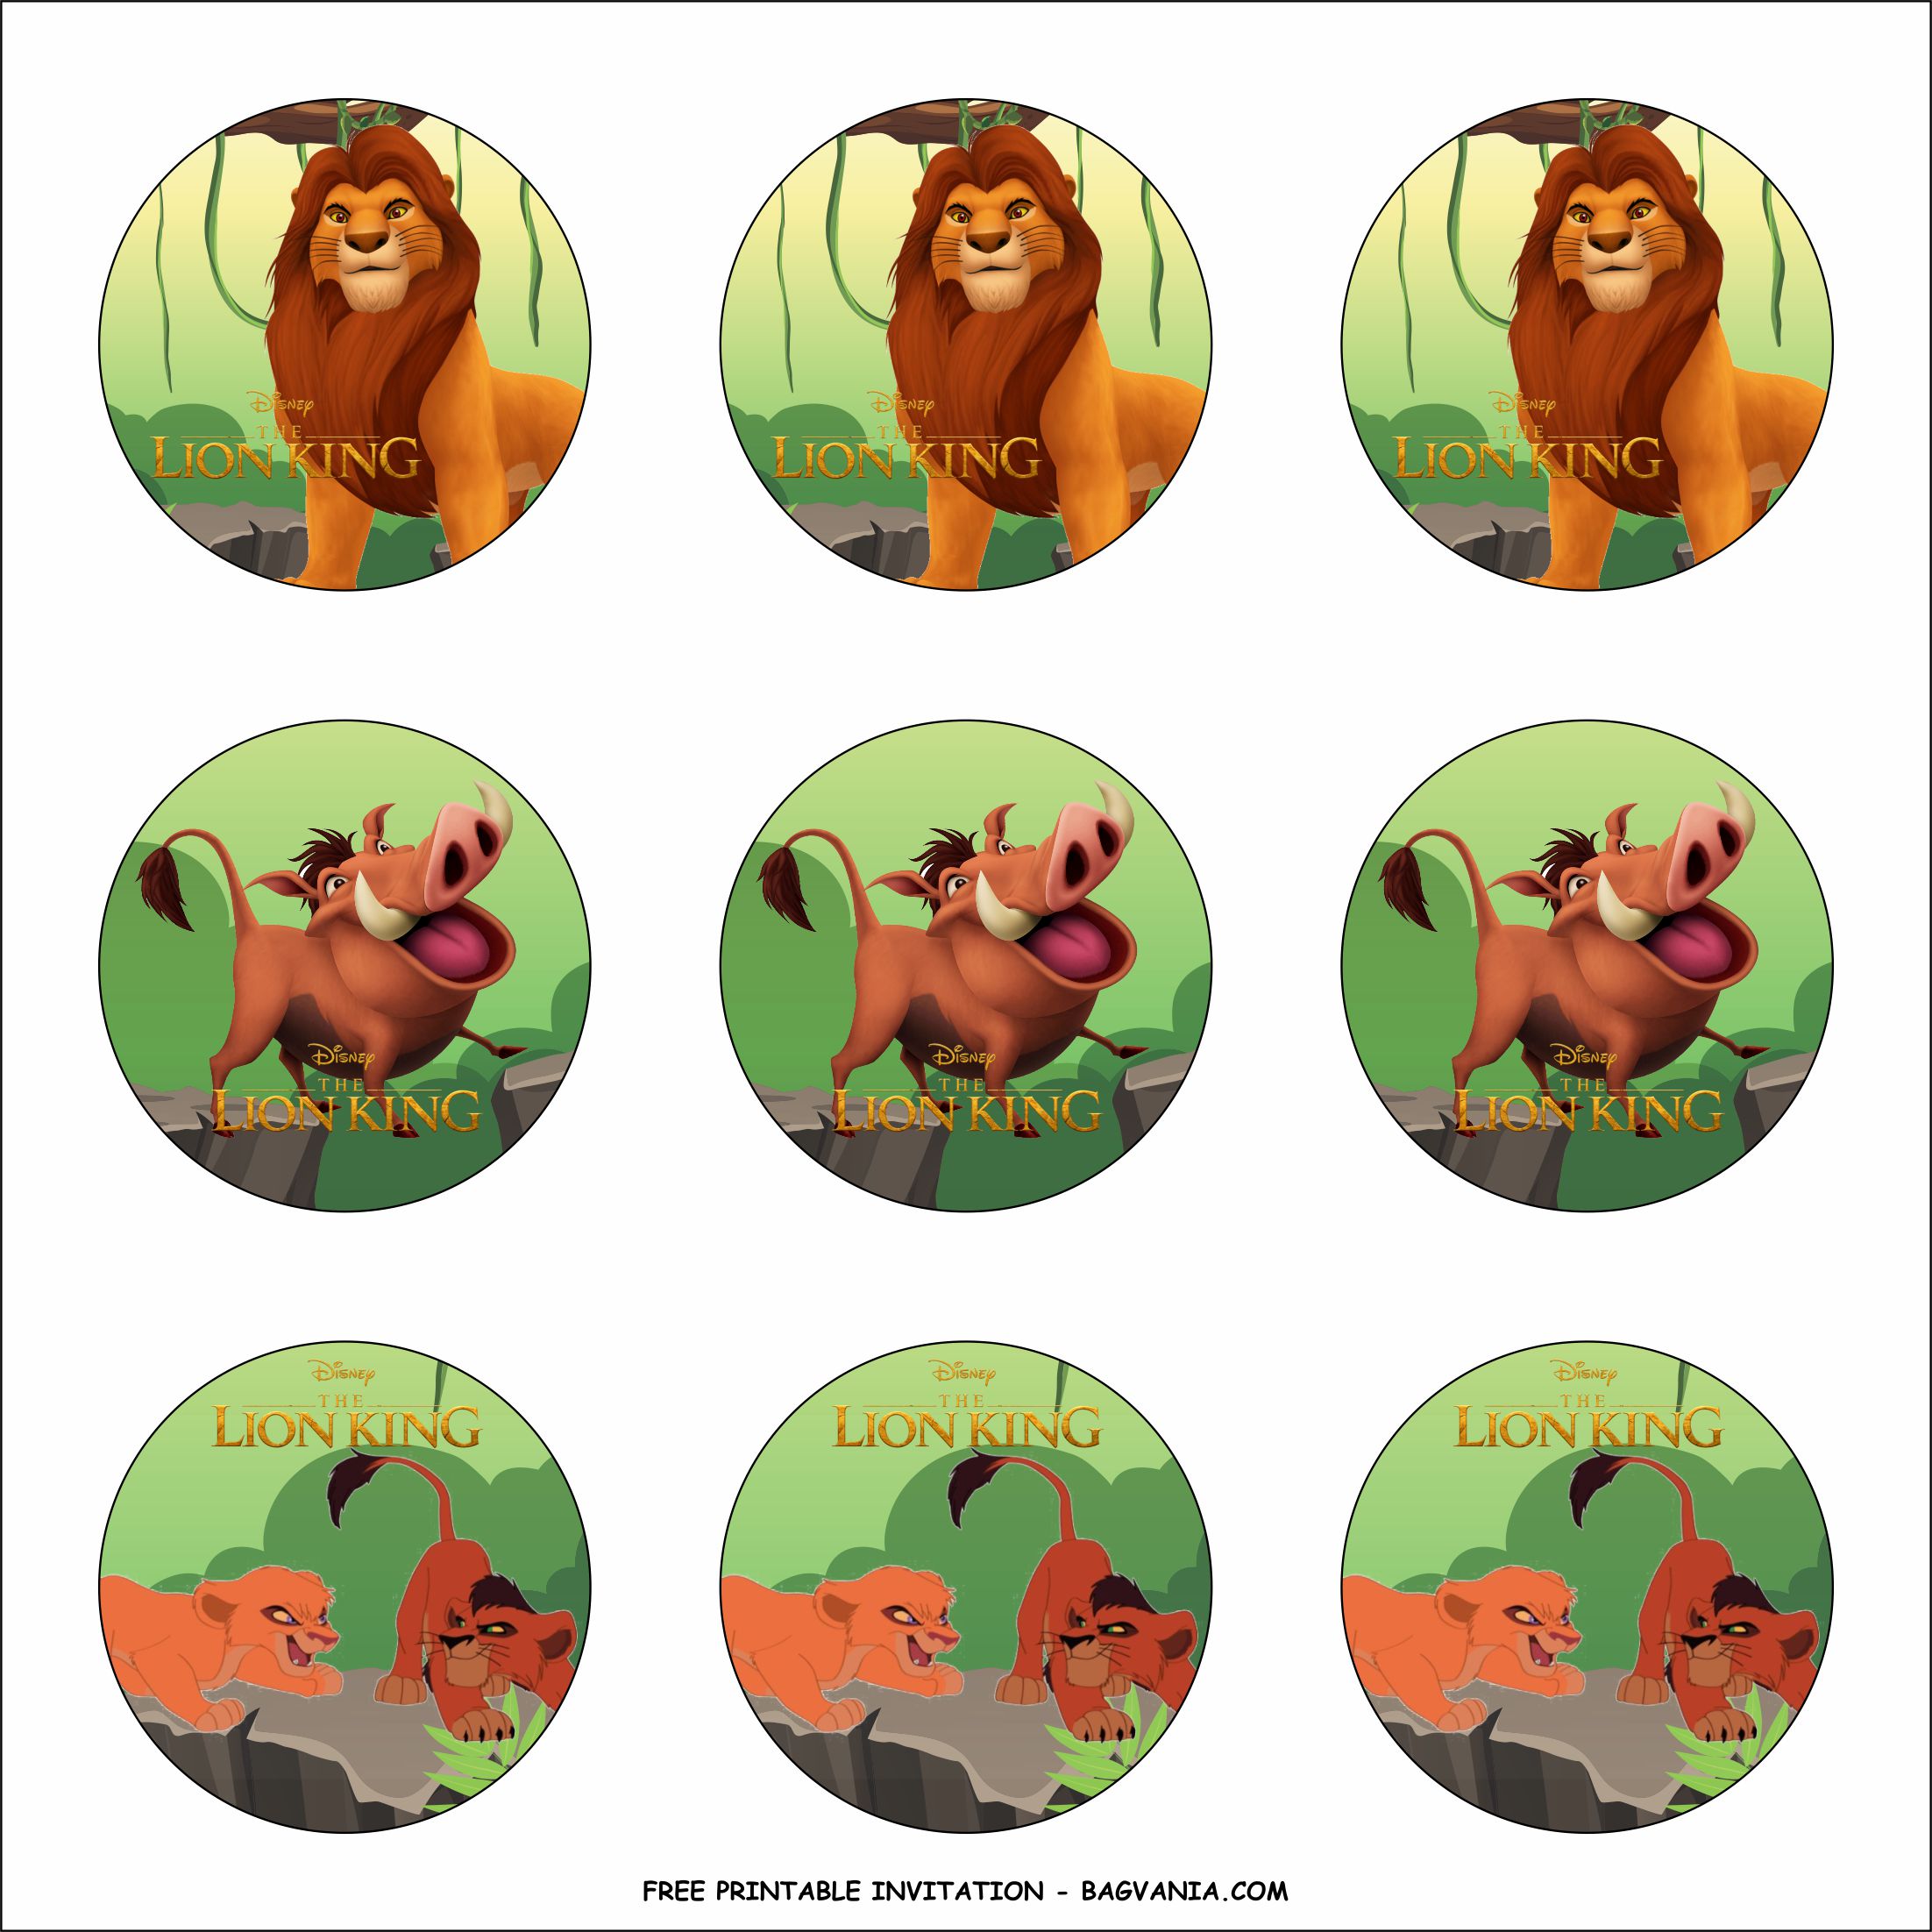 Free Printable Lion King Birthday Party Kits Template Free Printable Birthday Invitation Templates Bagvania